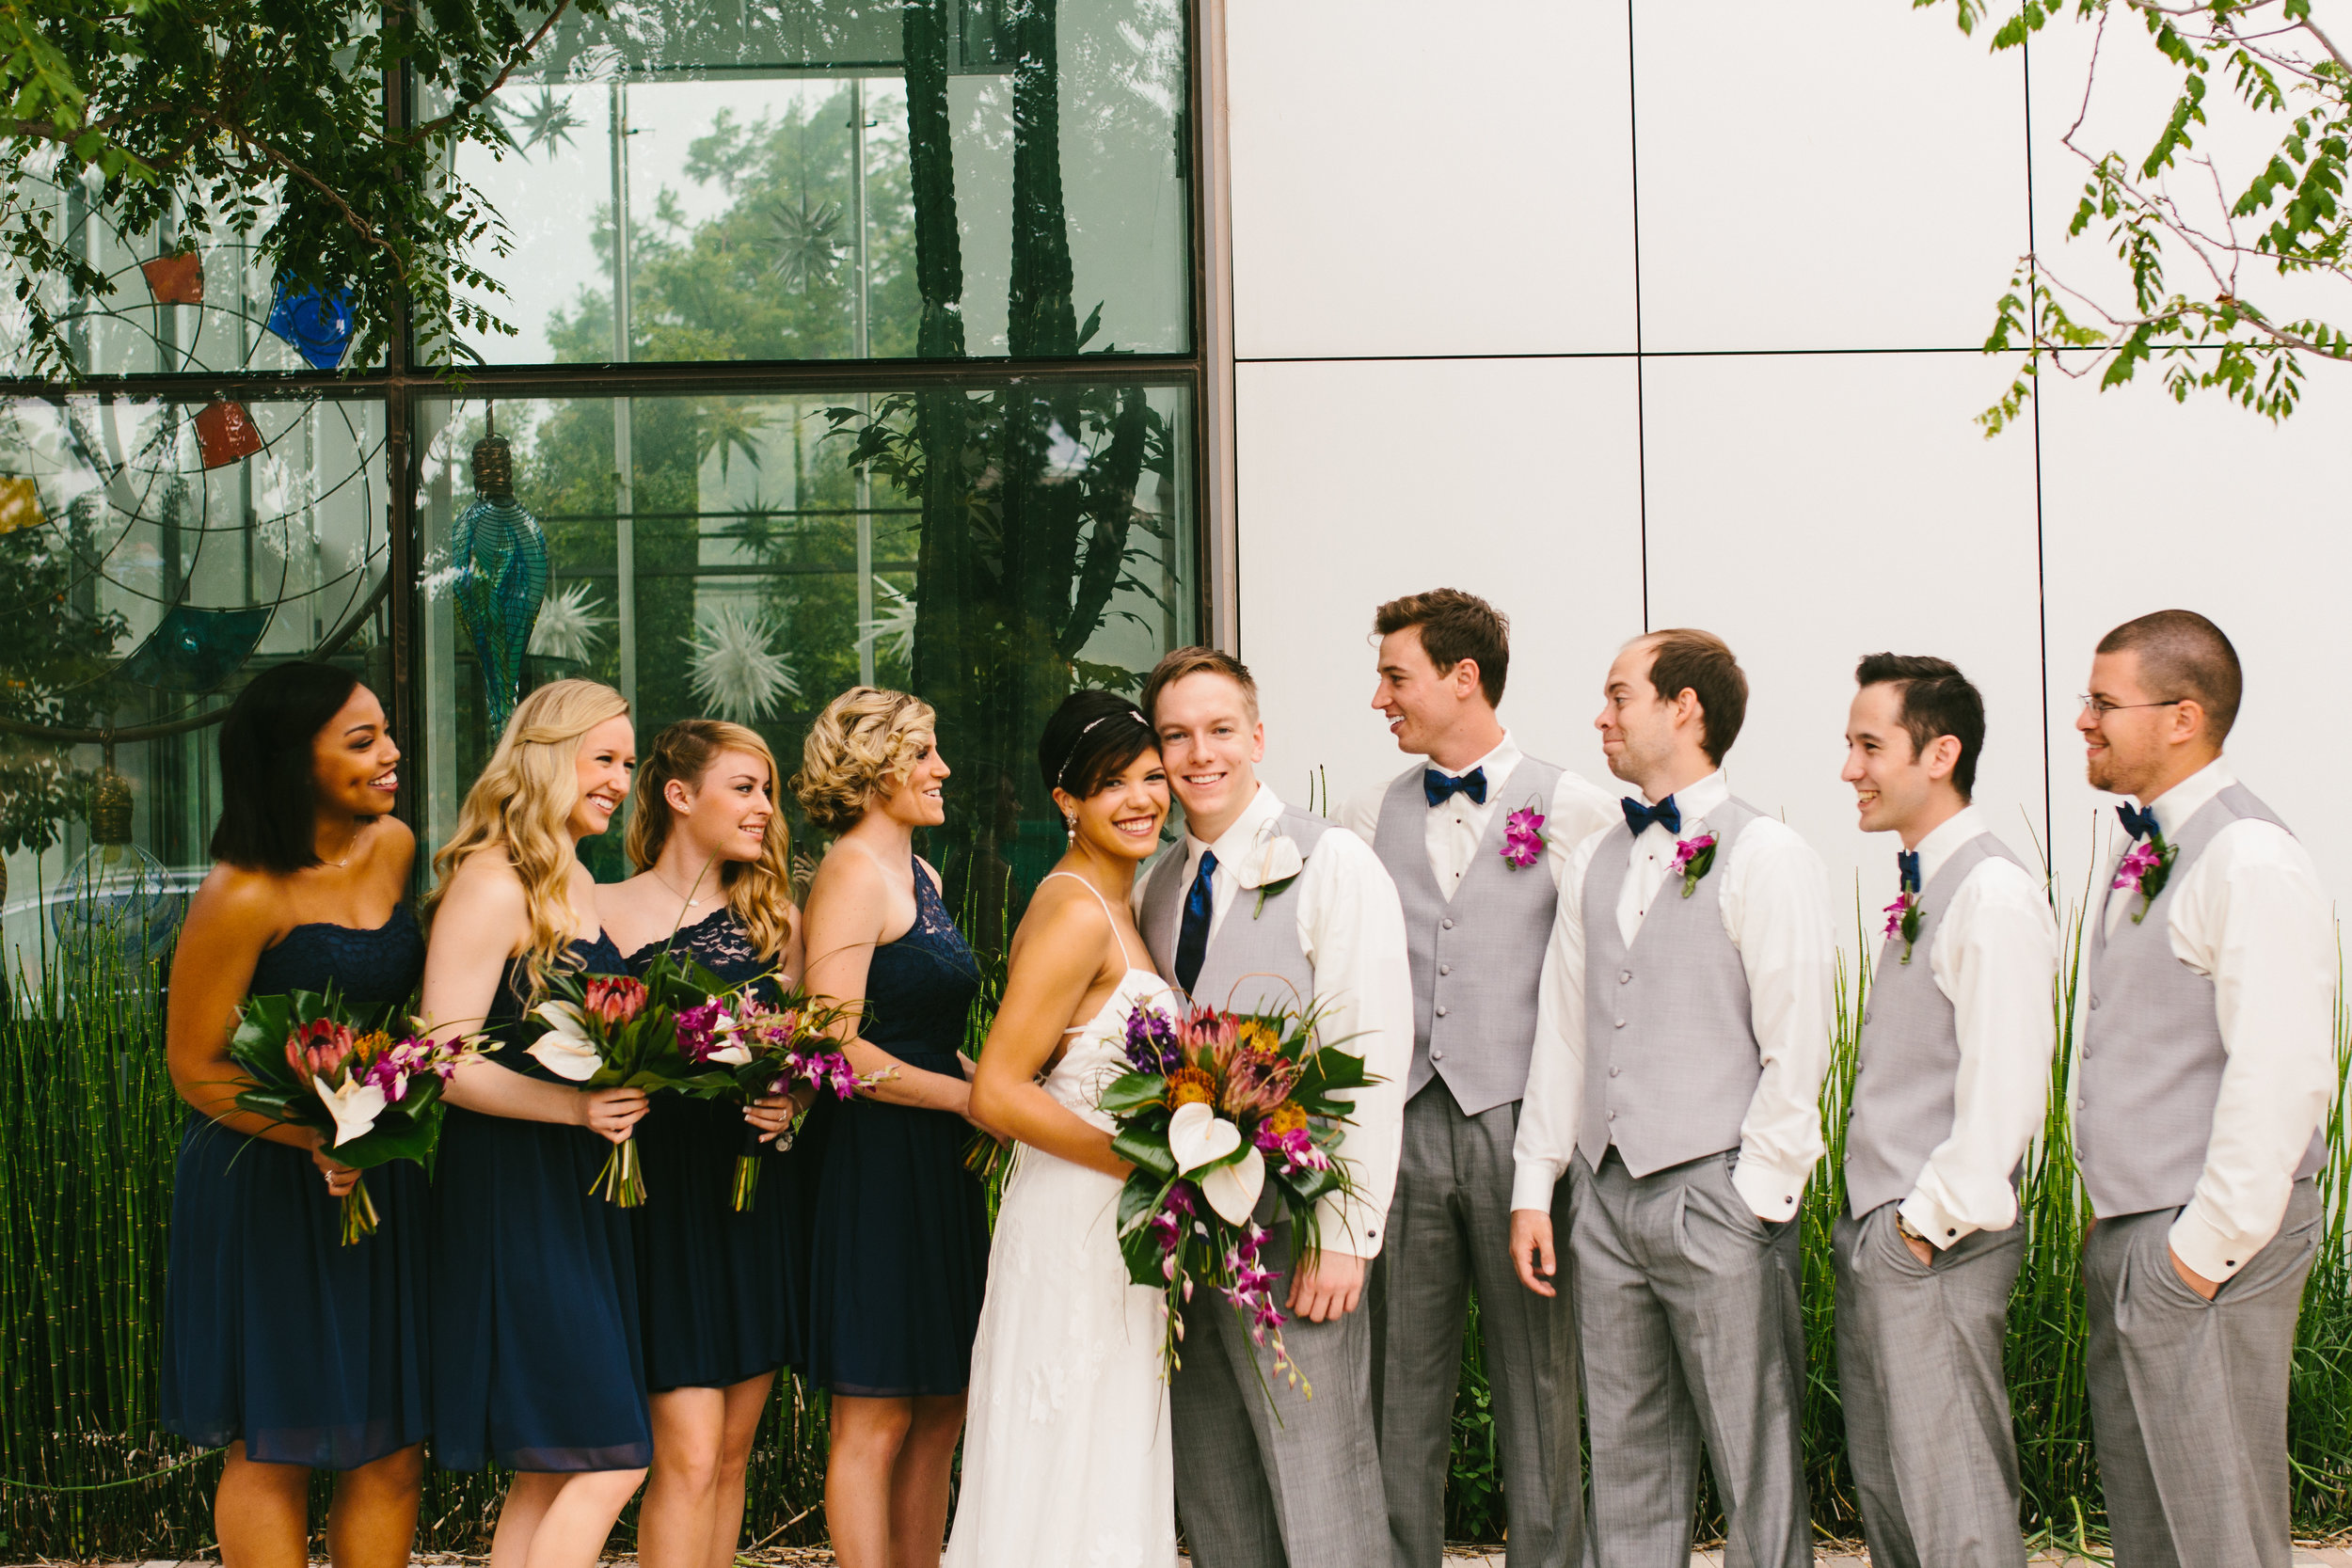 A Botanical Gardens Budget Wedding — The Overwhelmed Bride // Wedding ...